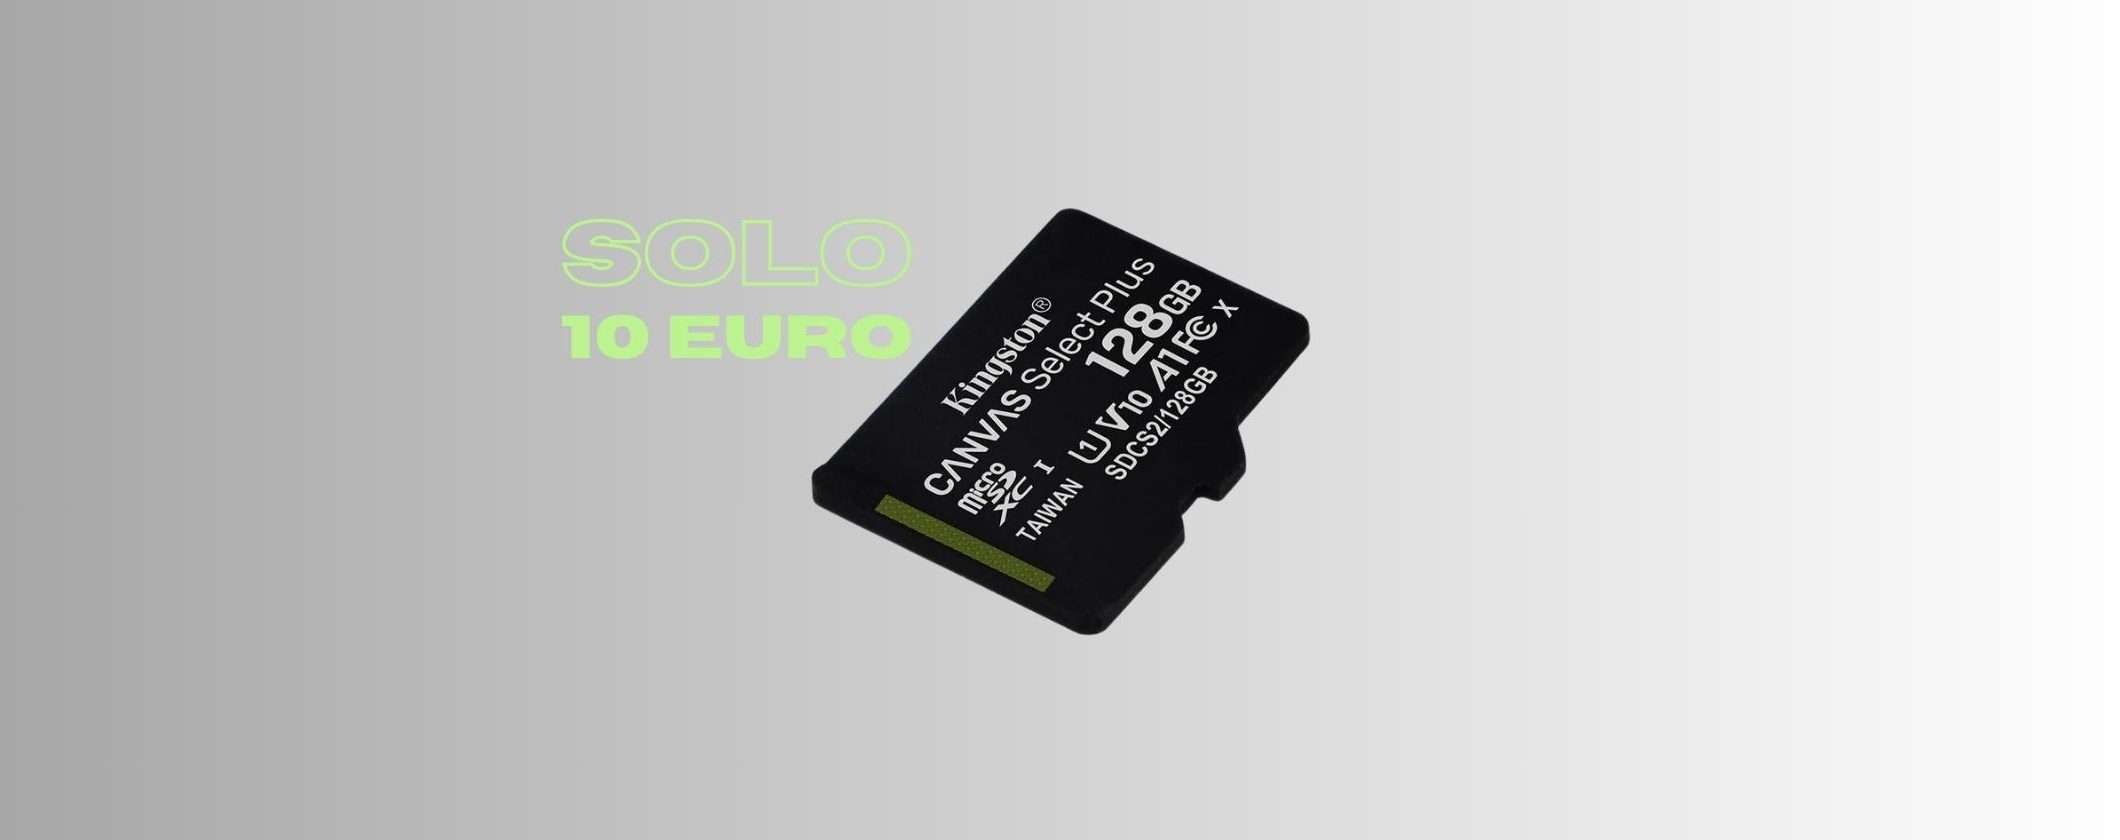 MicroSD Kingston 128GB a soli 10€ su Amazon: ULTIMI PEZZI